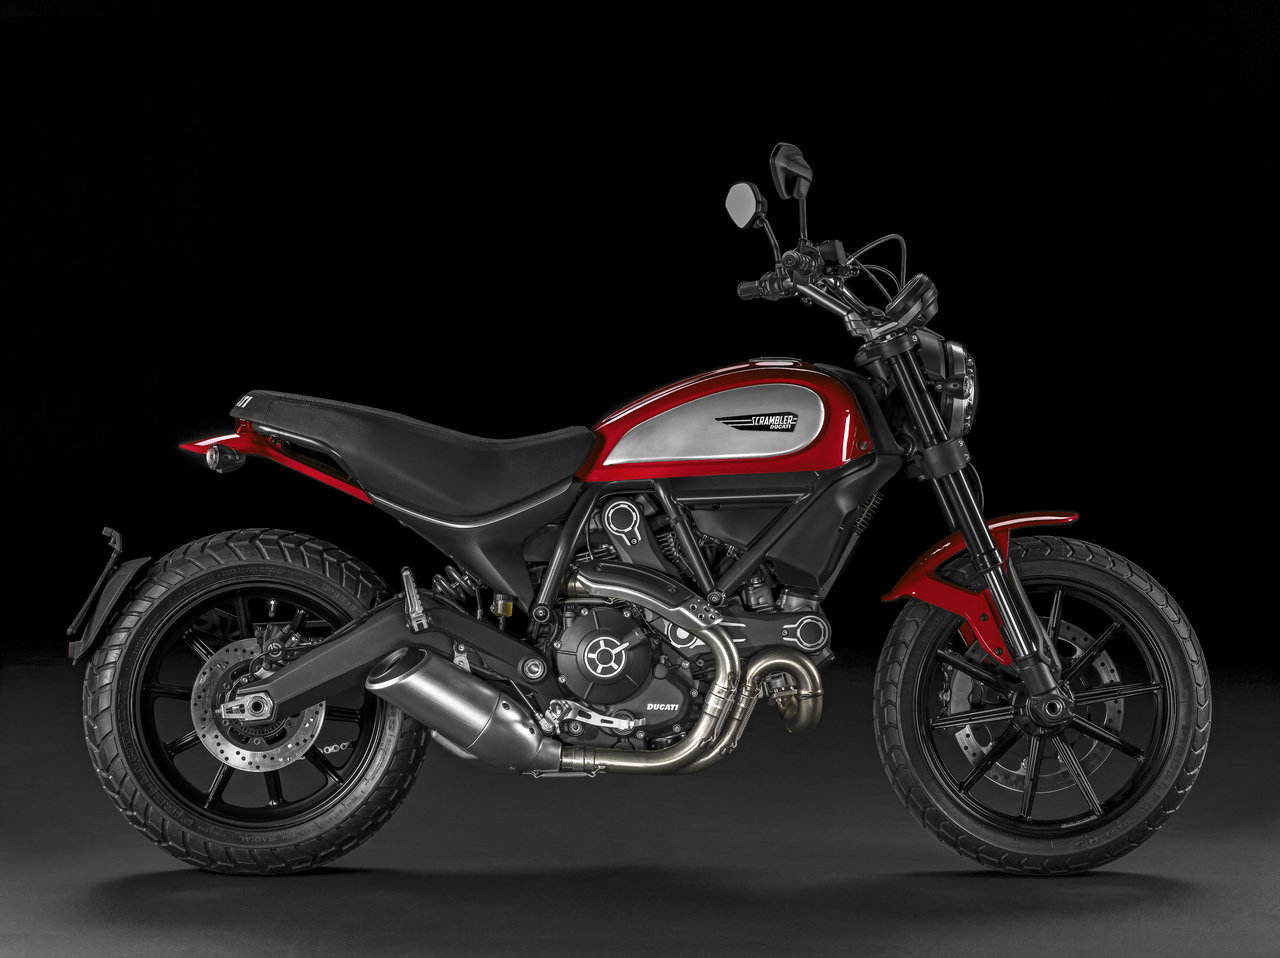 Moto dell’anno 2015 alla Ducati - image 000040-000010173 on https://moto.motori.net